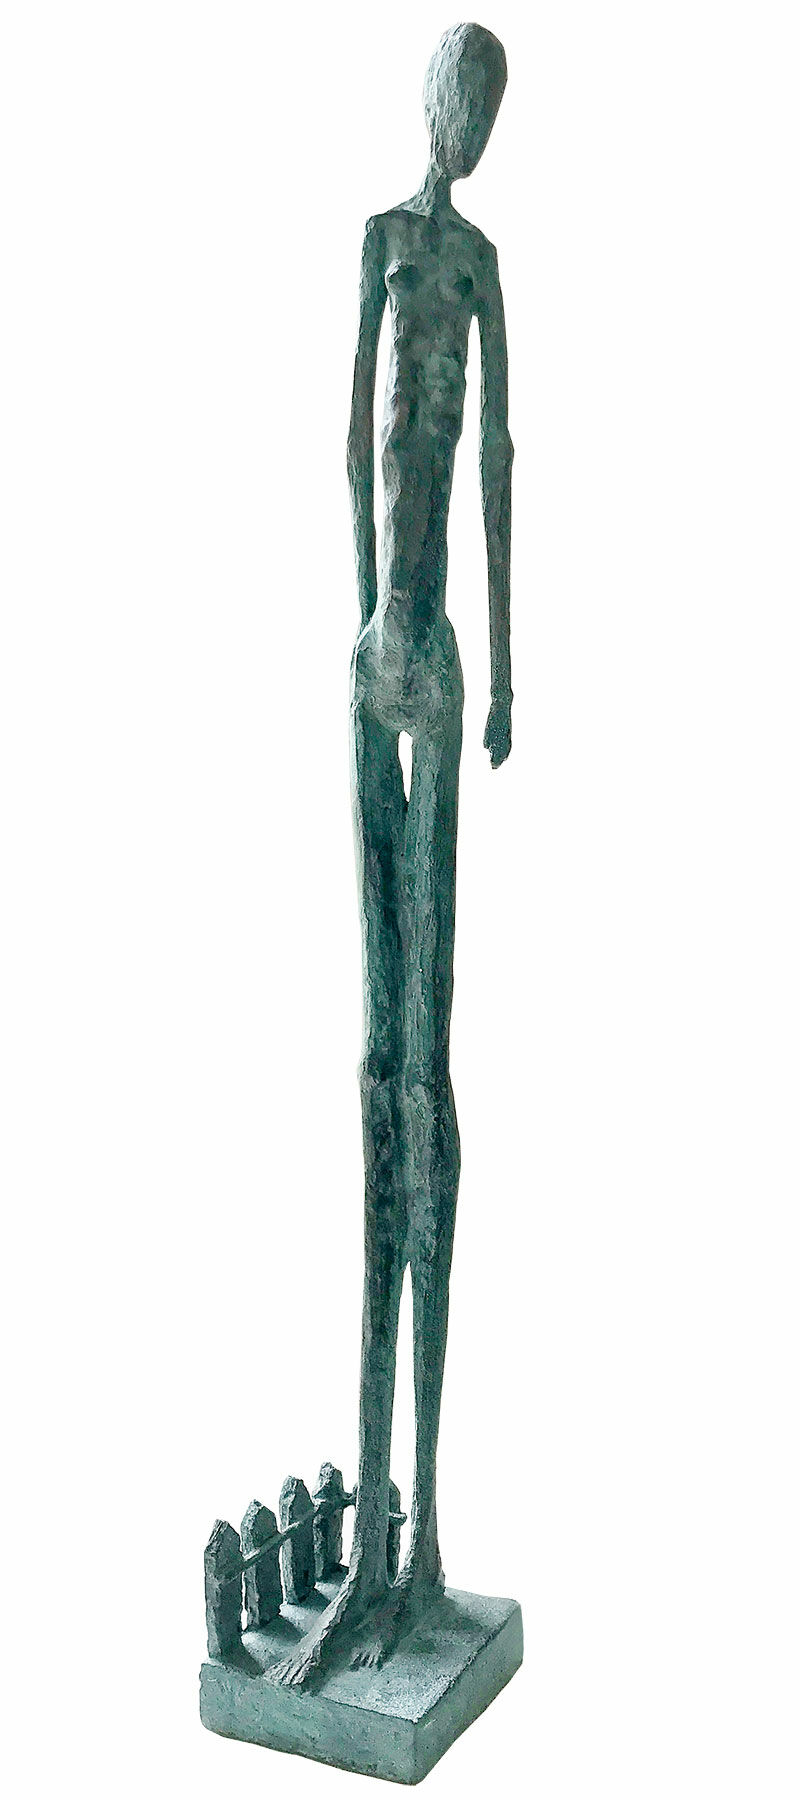 Skulptur "Frau im Garten" (2021), Bronze von Sibylle Waldhausen